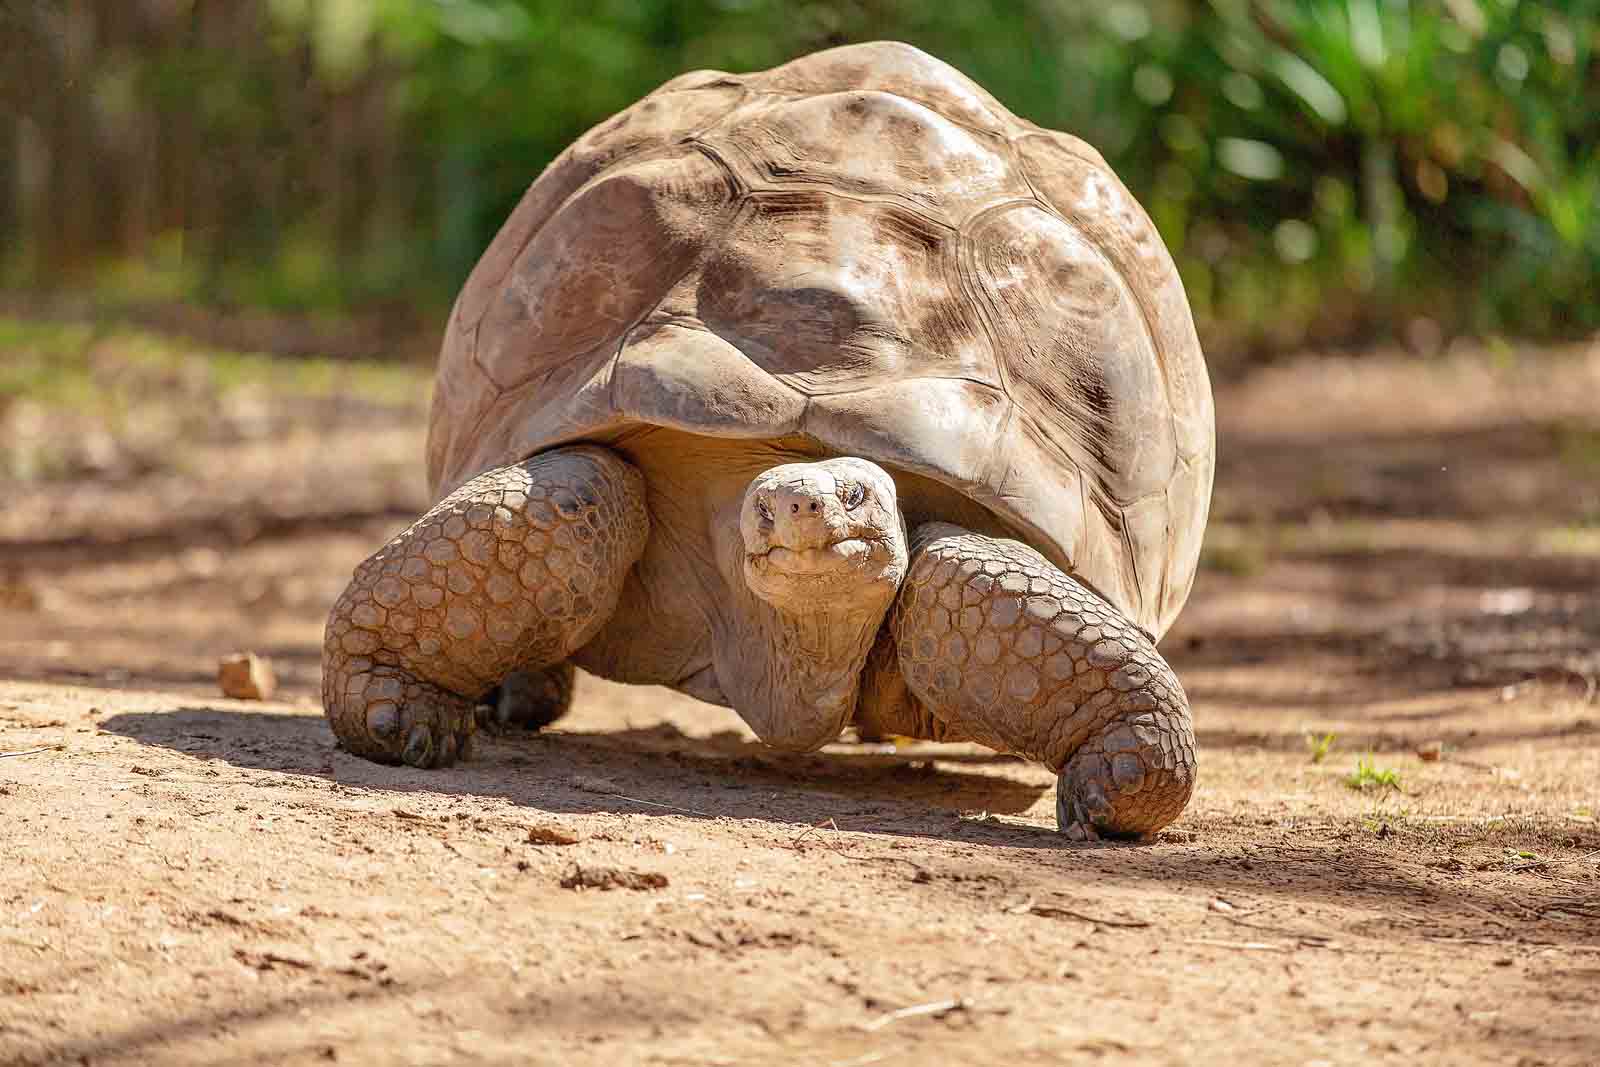 Galapagos Tortoise